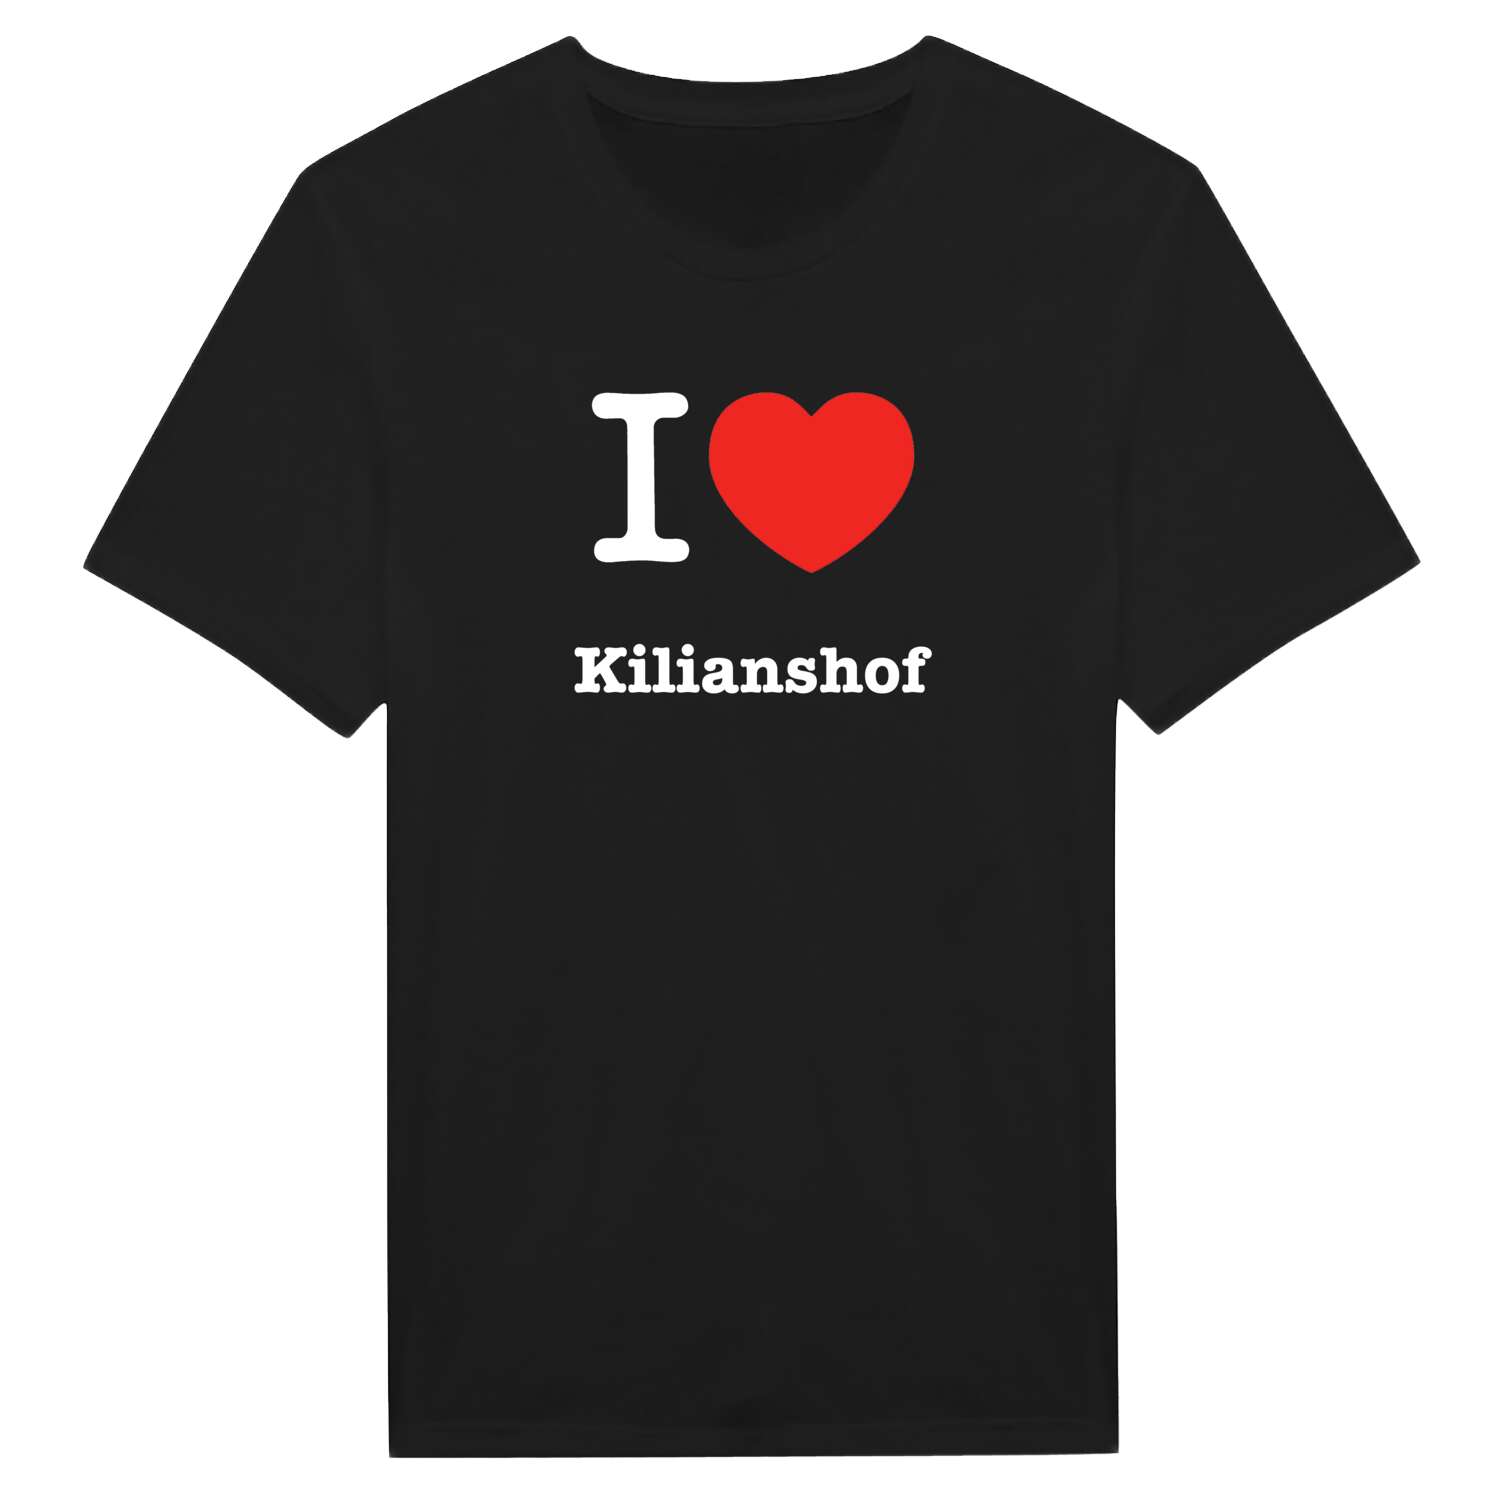 Kilianshof T-Shirt »I love«